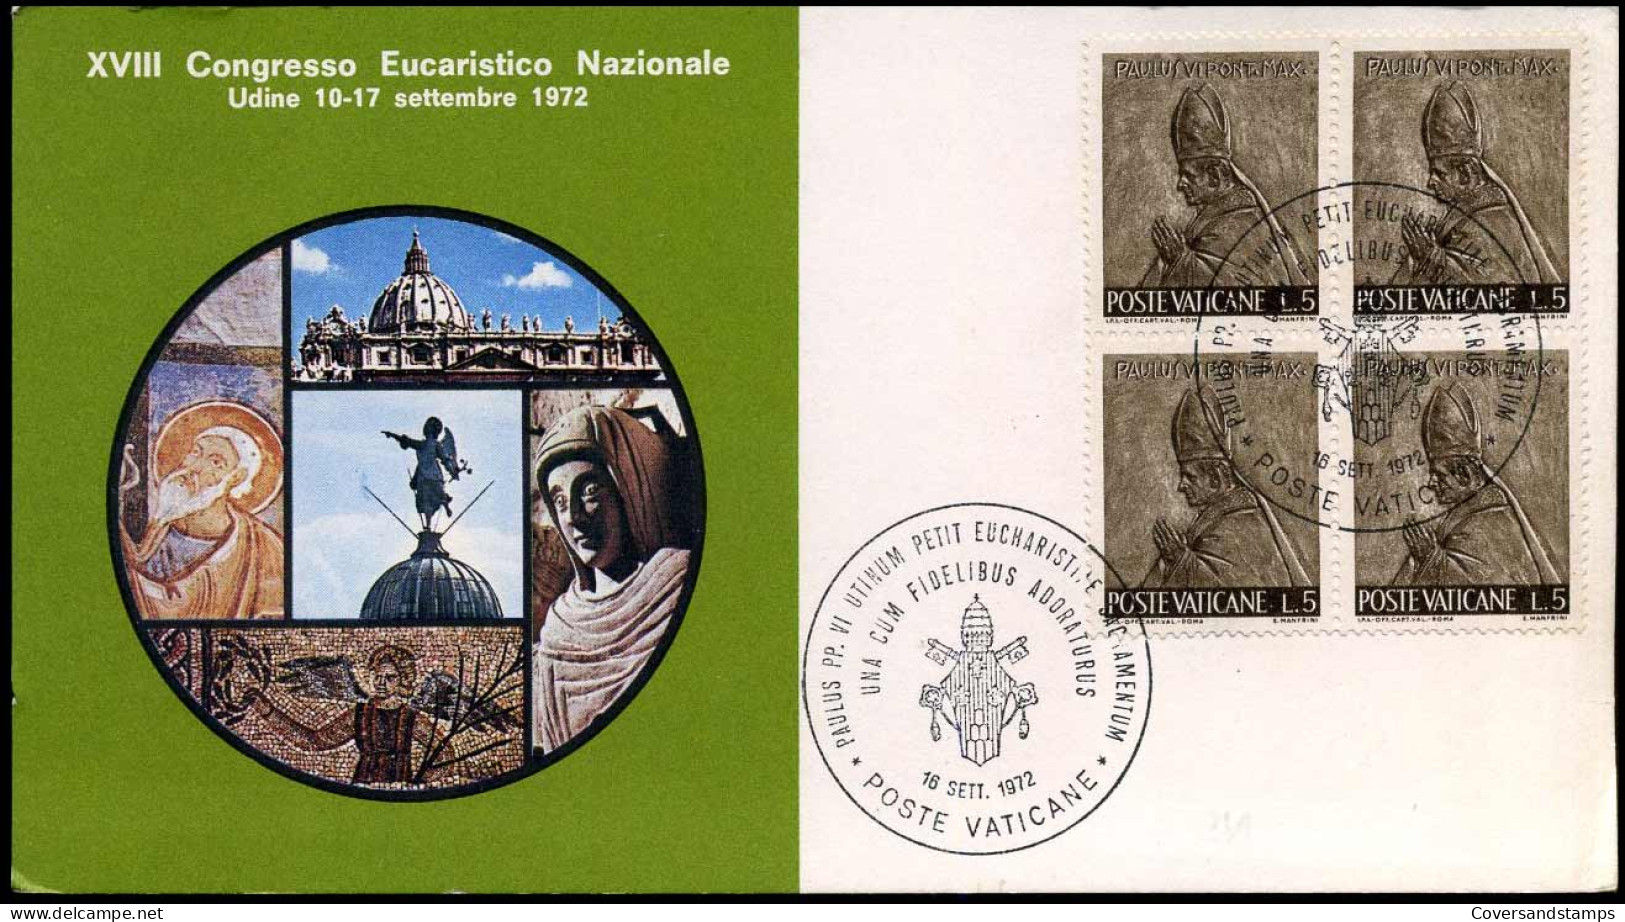 XVIII Congresso Eucaristico Nazionale Udine 1972 - Storia Postale